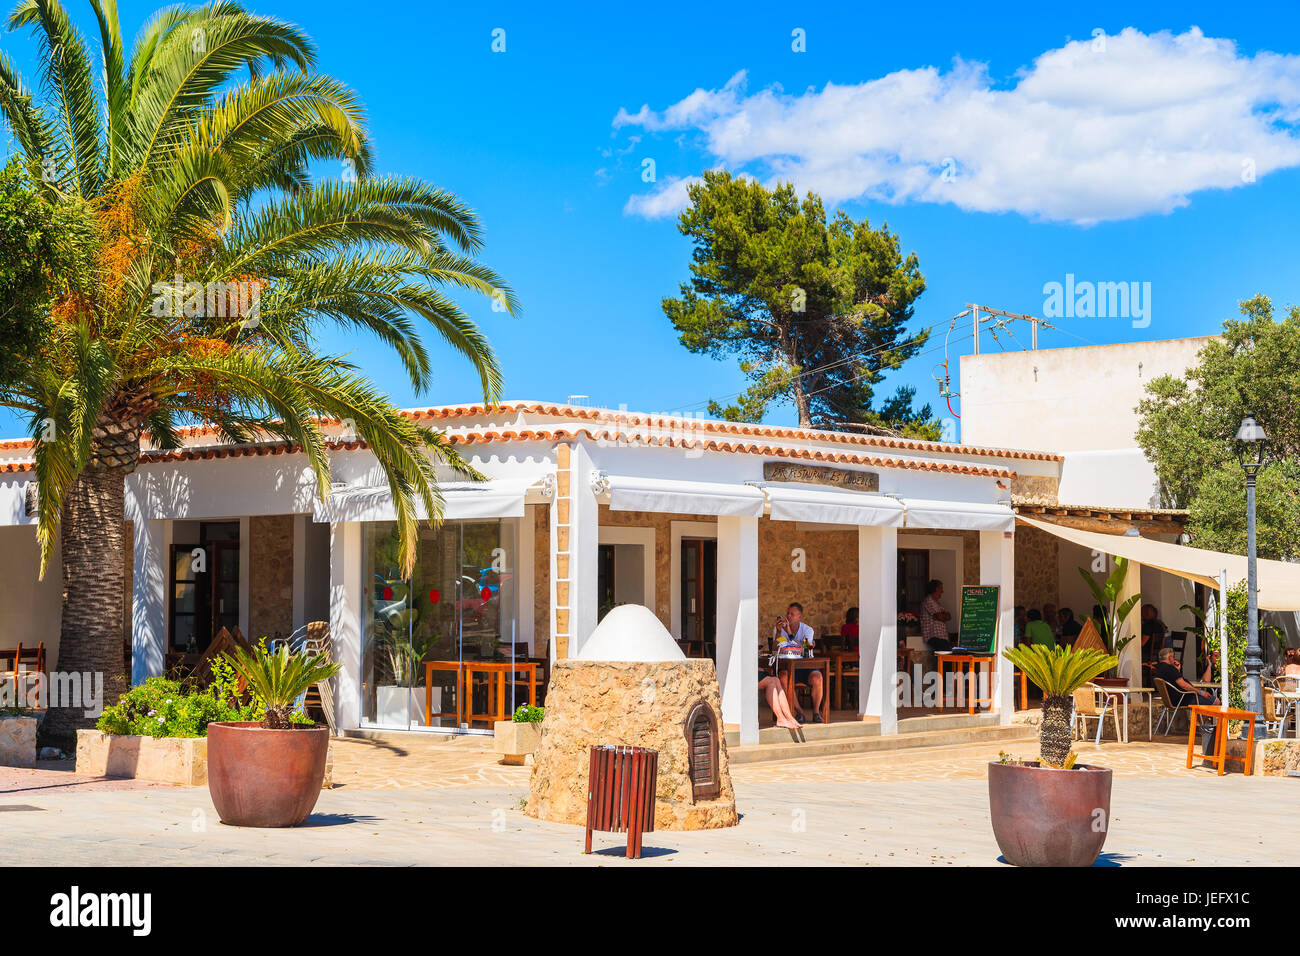 Insel IBIZA, Spanien - 19. Mai 2017: typisches Restaurant in Es Cubells Dorf, Insel Ibiza, Spanien. Stockfoto